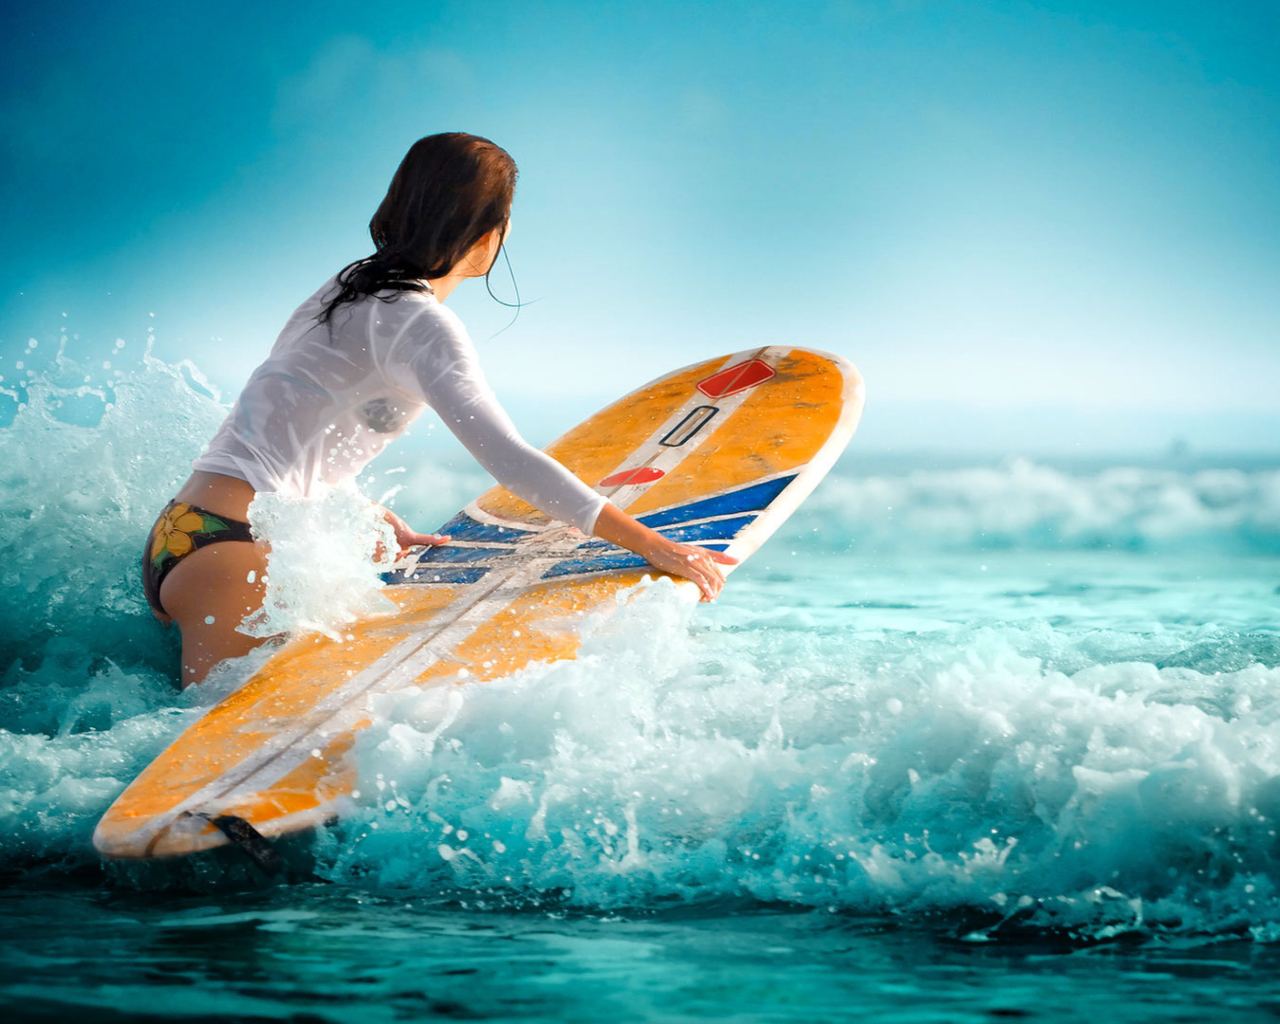 Обои Surfing Girl 1280x1024